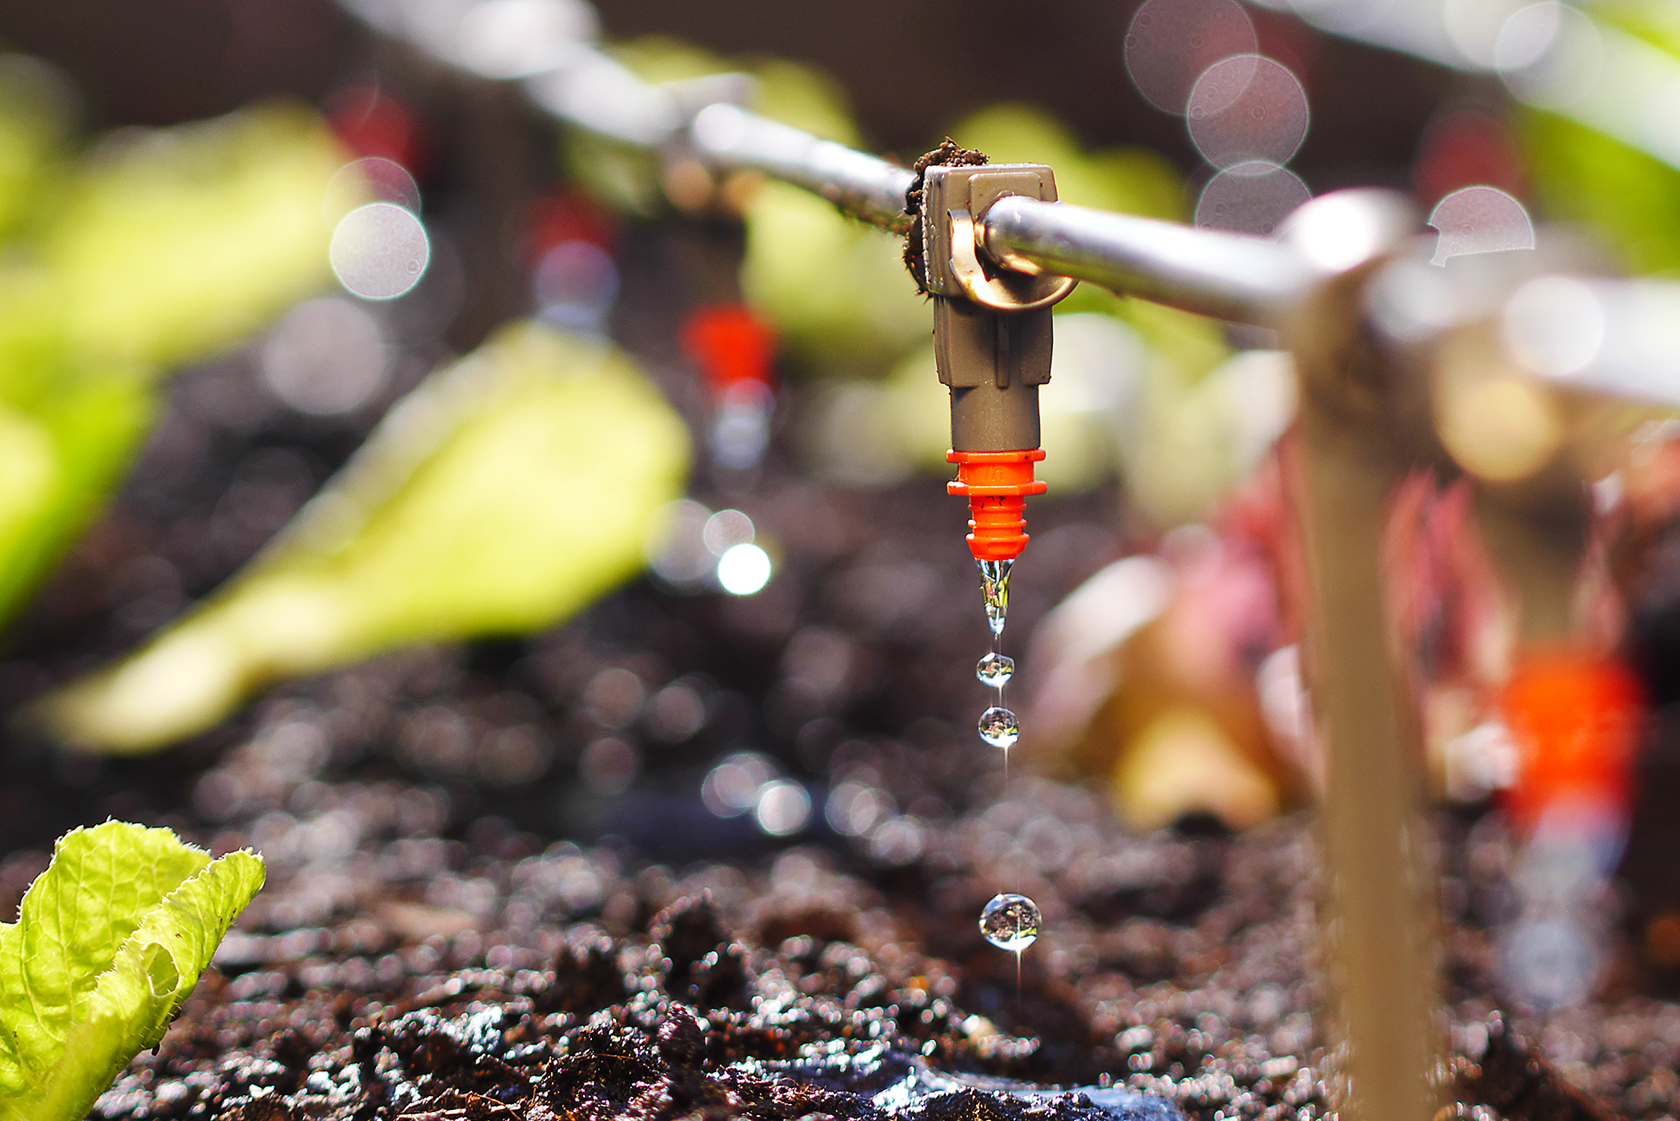 Come scegliere il miglior sistema di irrigazione interrata per il giardino